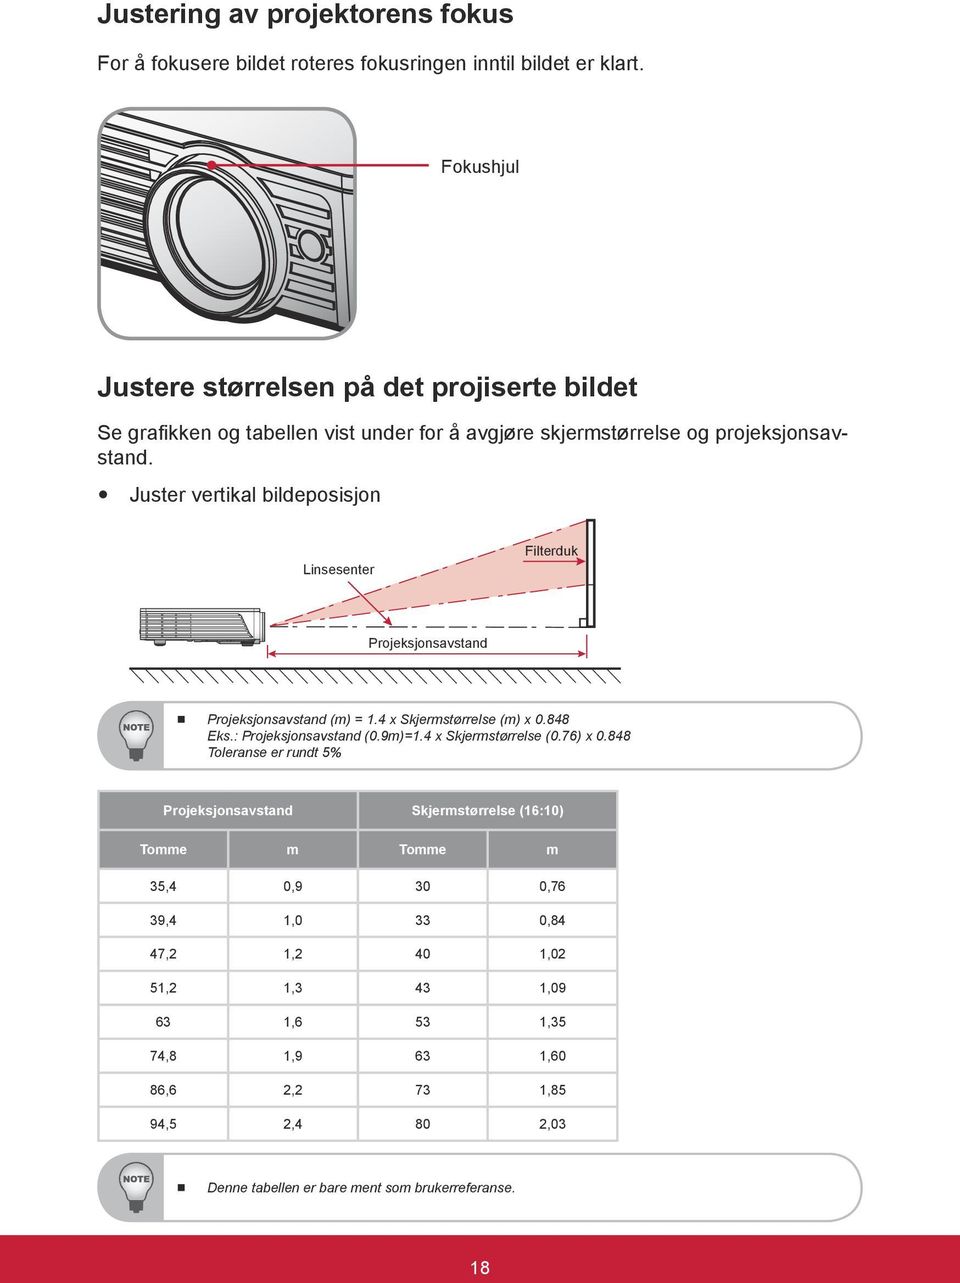 y Juster vertikal bildeposisjon Linsesenter Filterduk Projeksjonsavstand Projeksjonsavstand (m) = 1.4 x Skjermstørrelse (m) x 0.848 Eks.: Projeksjonsavstand (0.9m)=1.